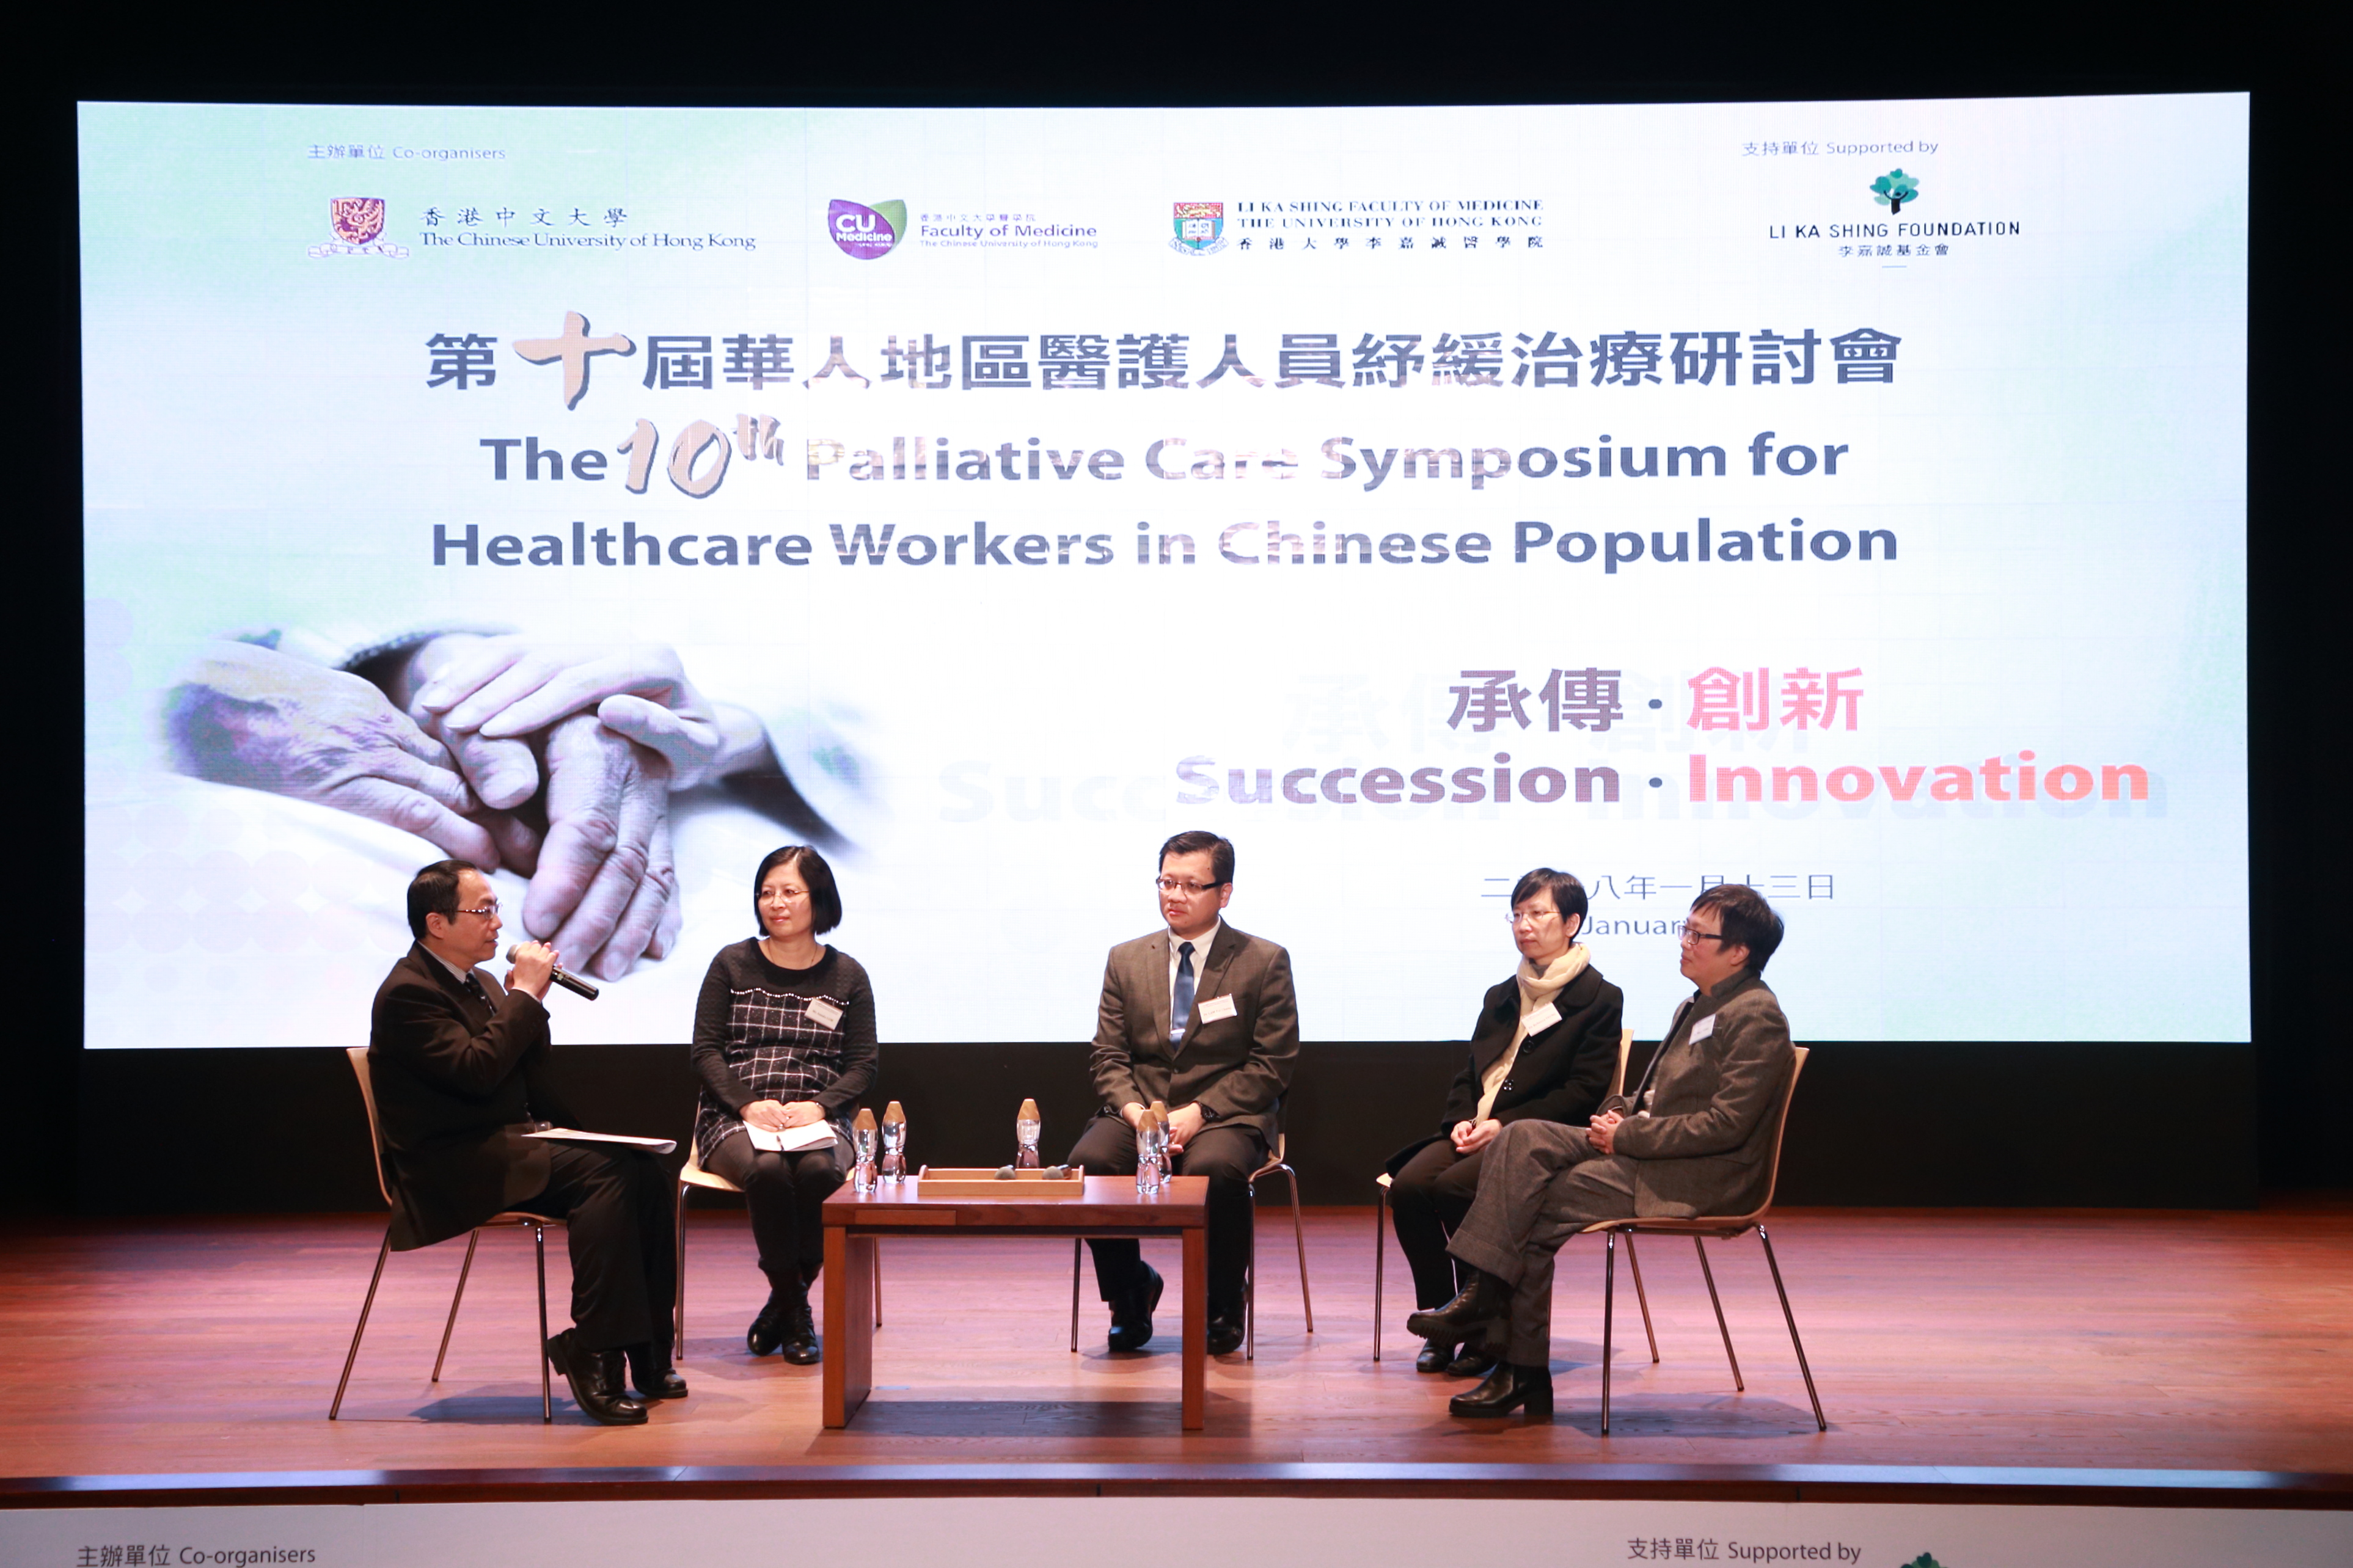 多位专家在座谈会上就「香港癌症纾缓治疗服务的未来发展」发表意见。